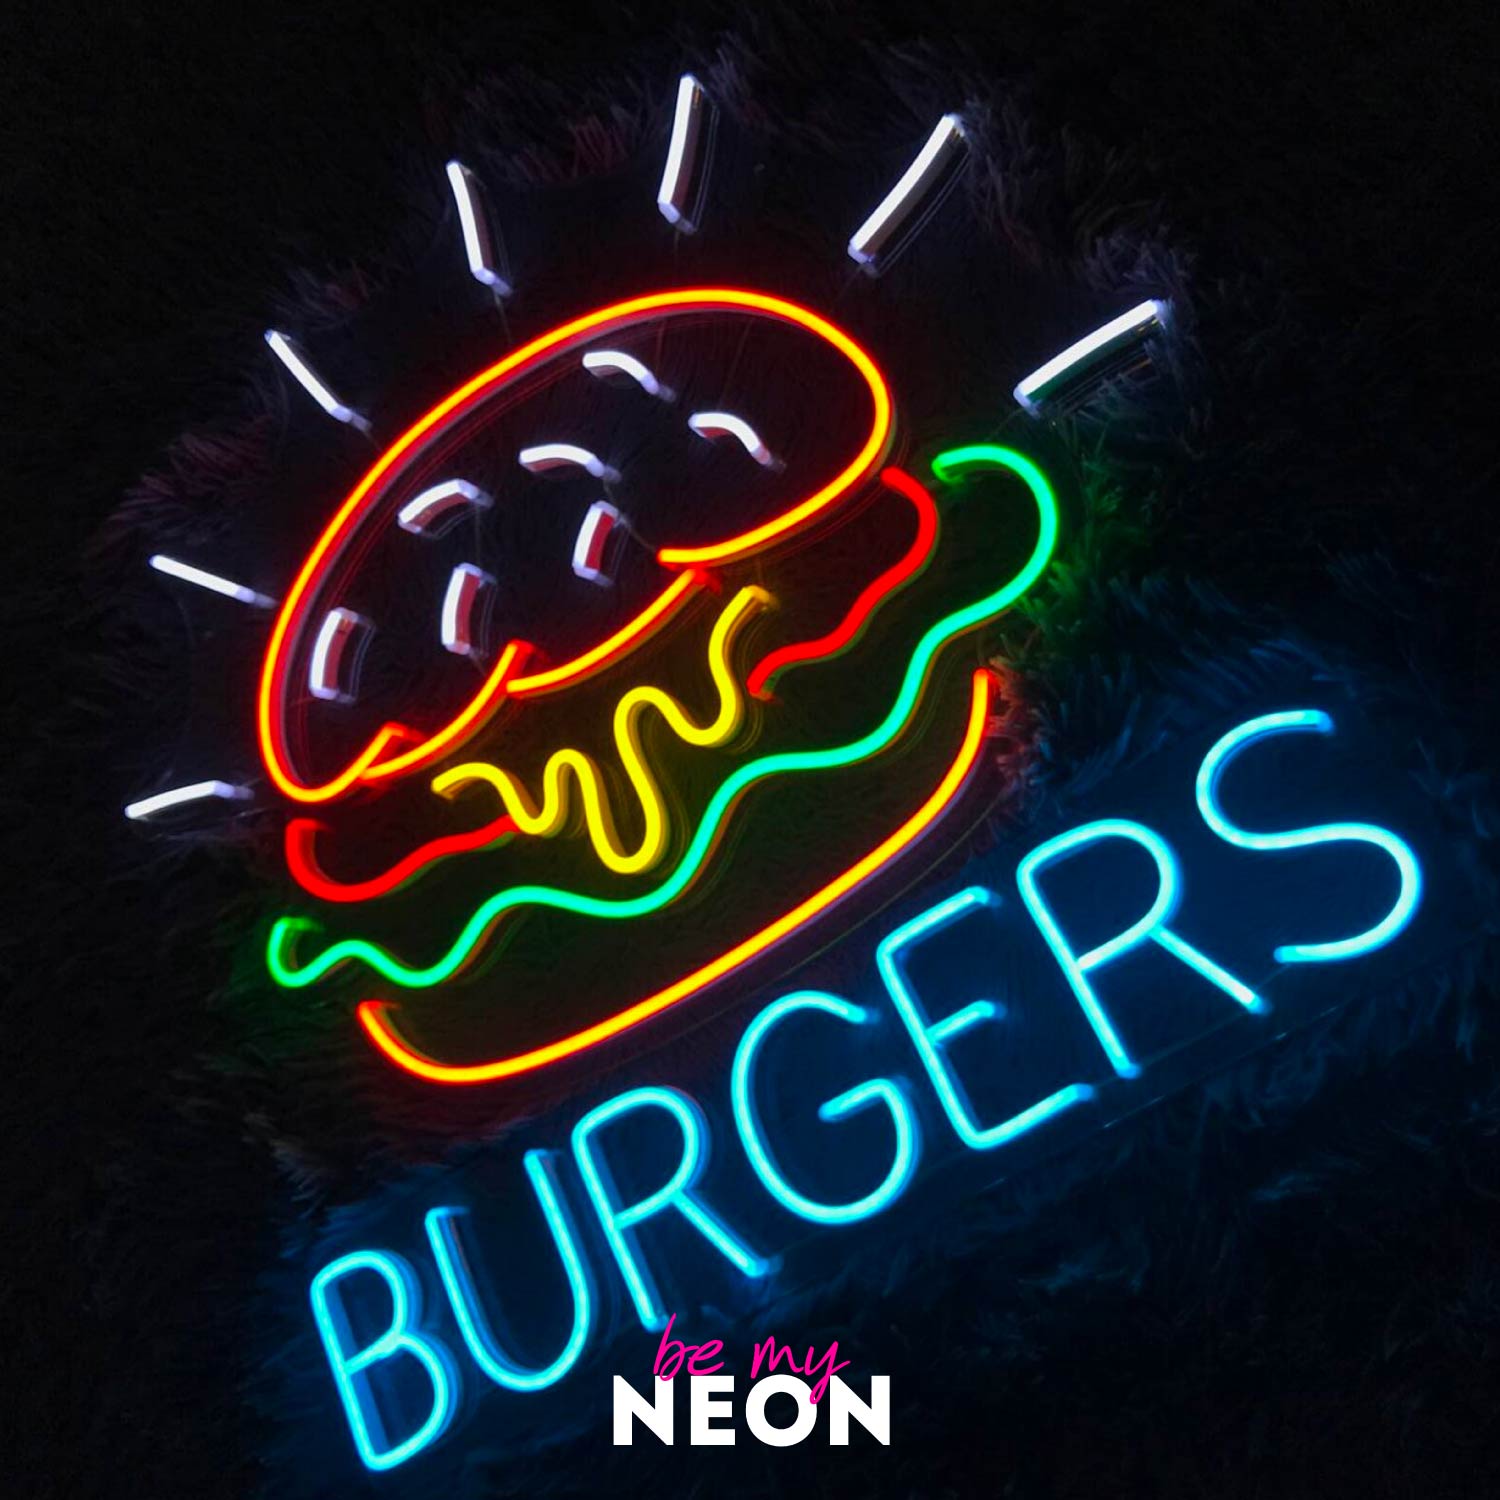 "Burger" LED Neonschild